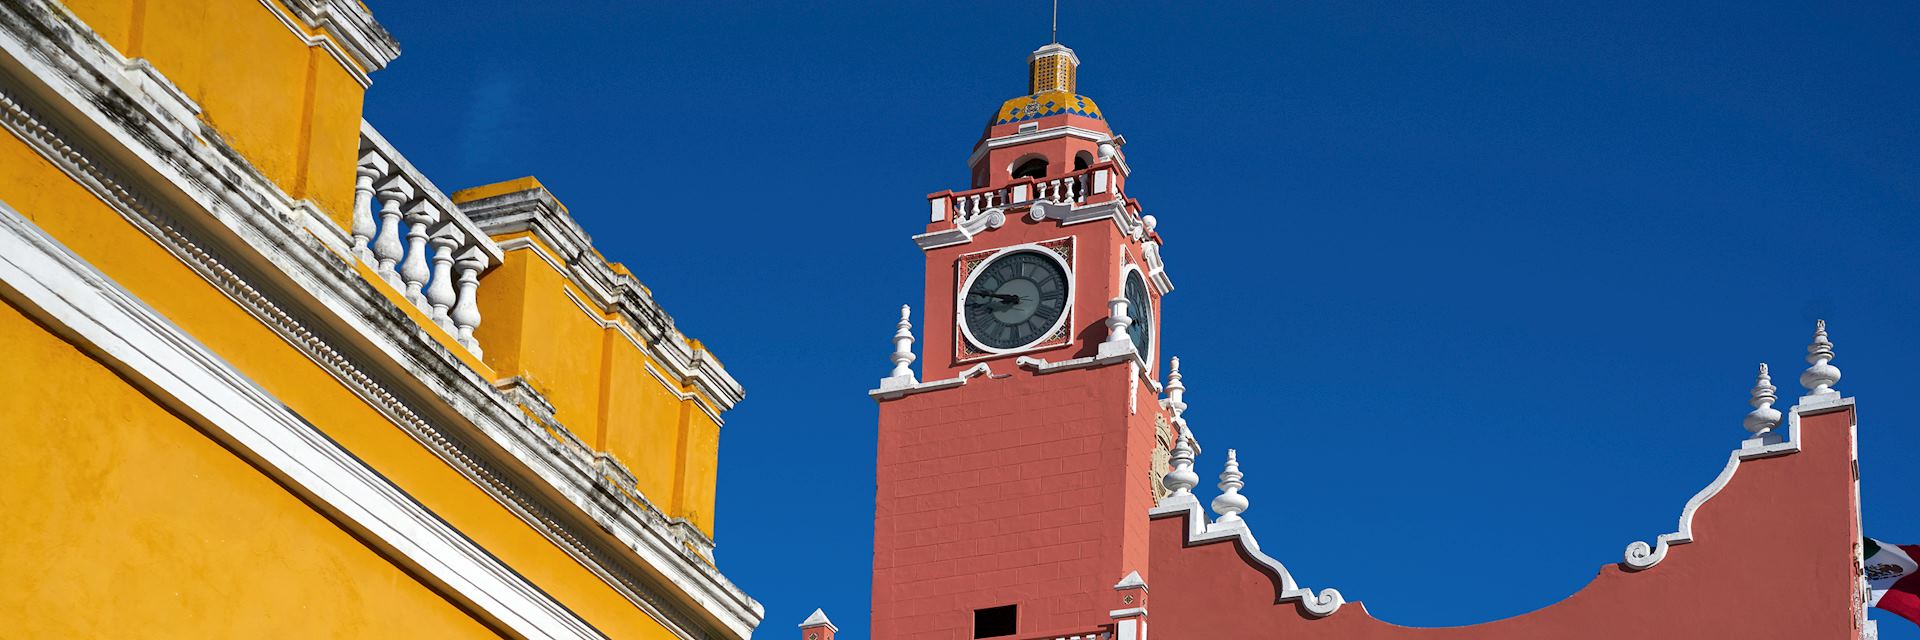 Mérida town hall